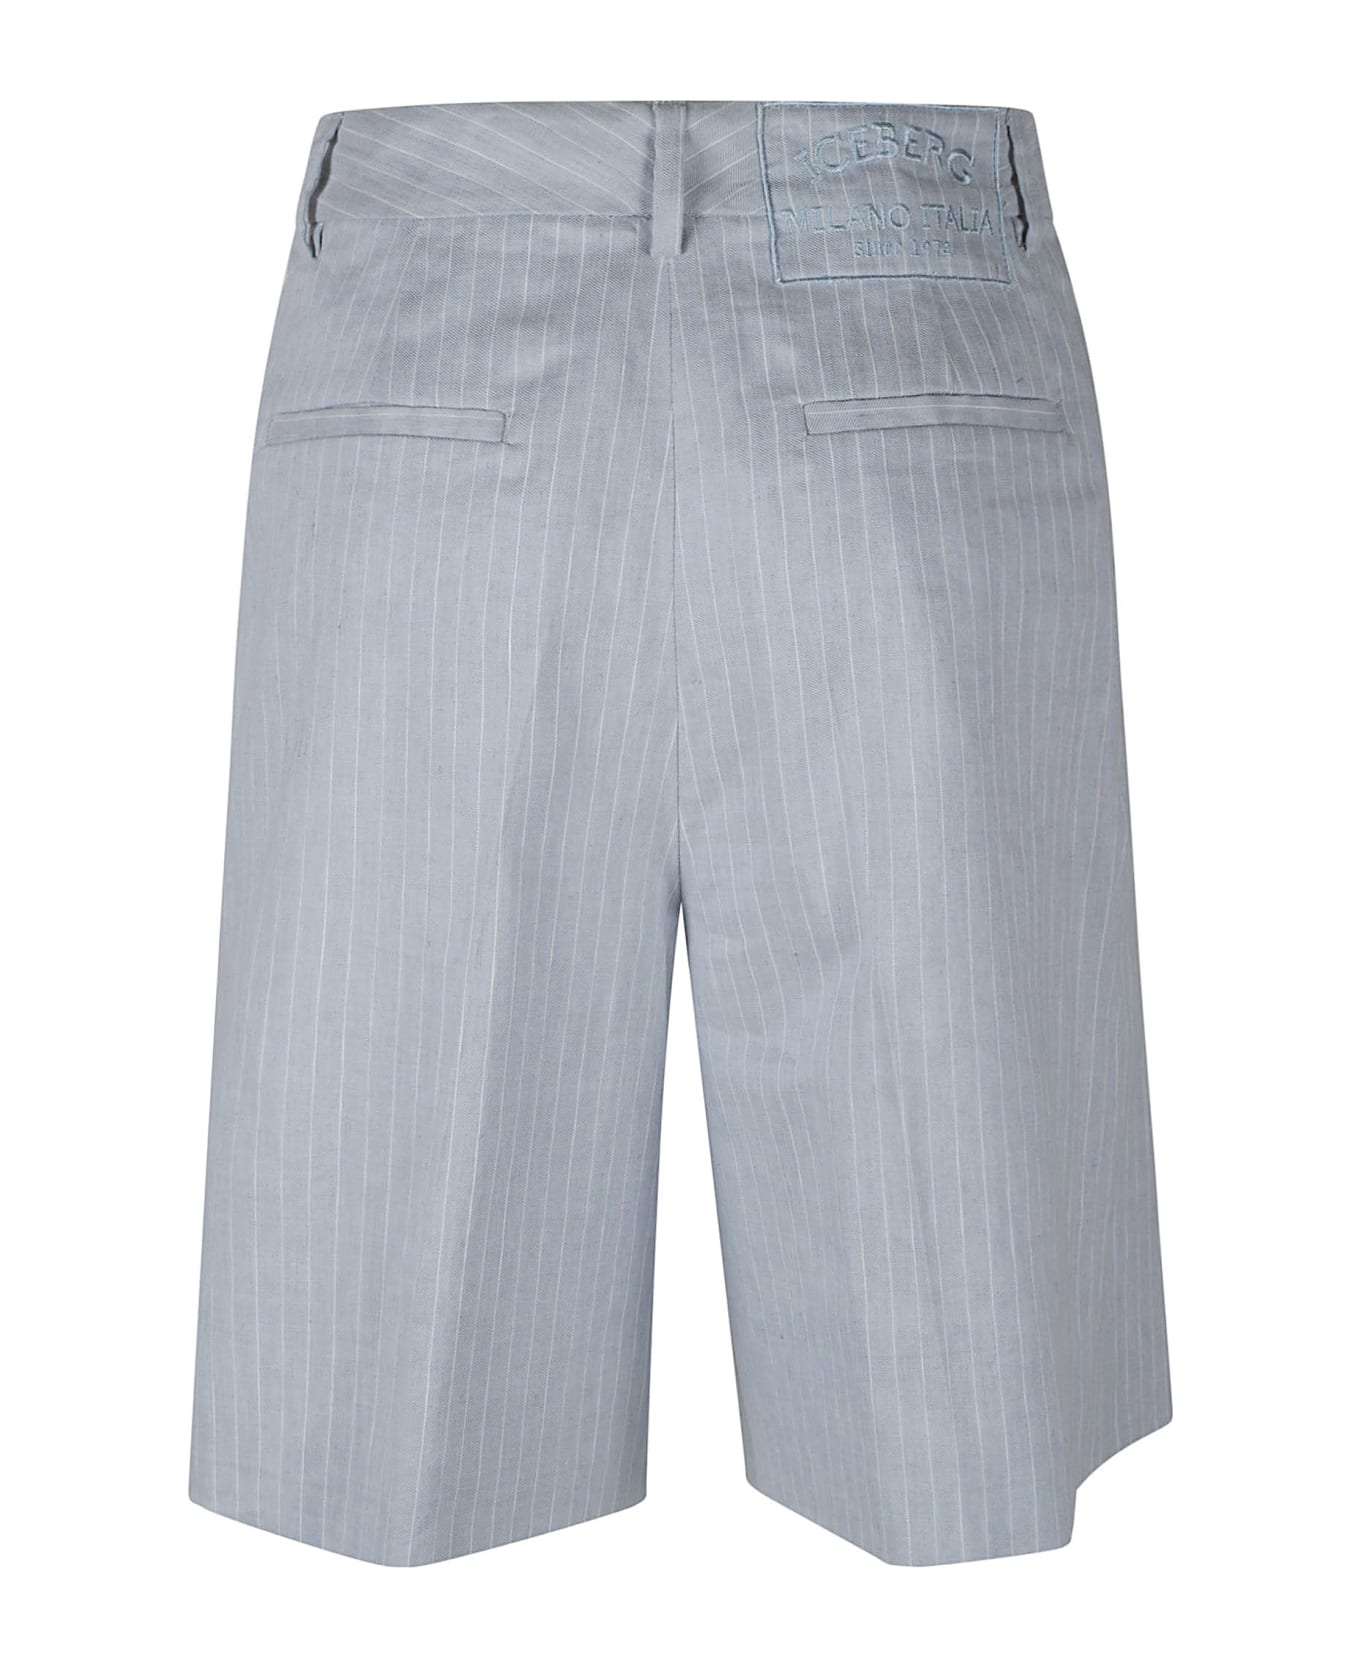 Iceberg Classic Striped Trouser Shorts - Rigato bia/azz